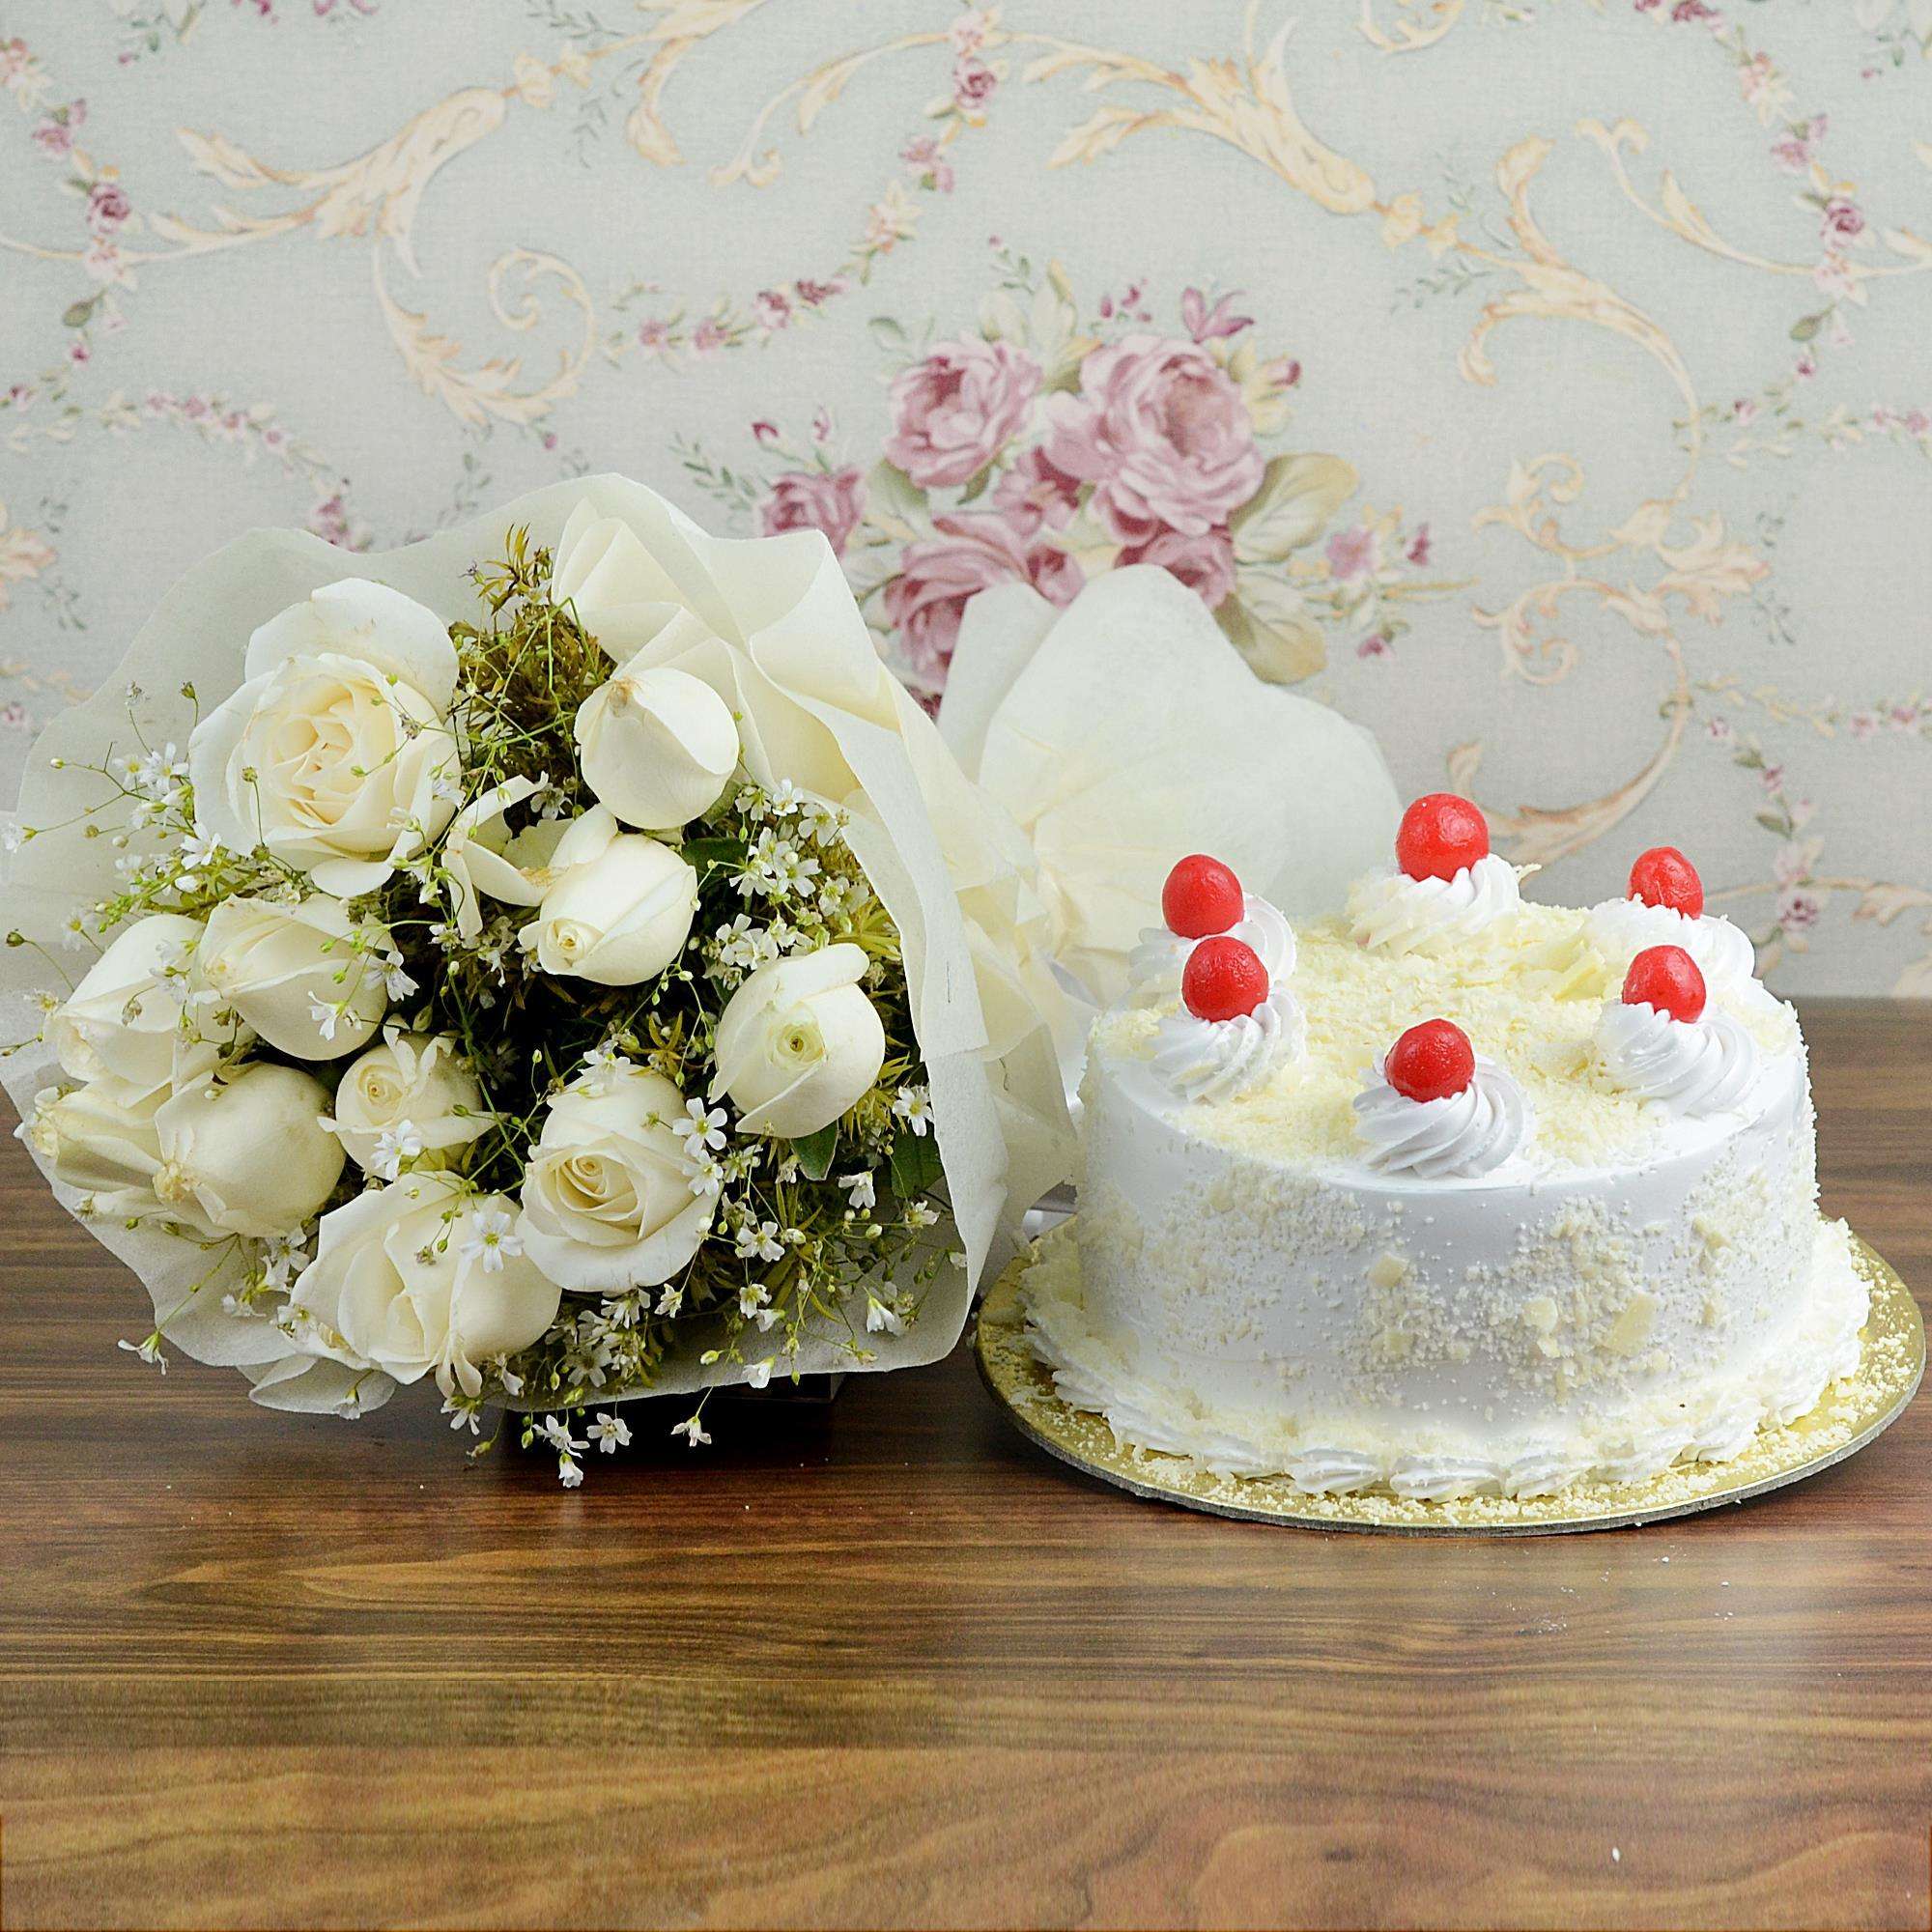 White Delight Cake & Flowers